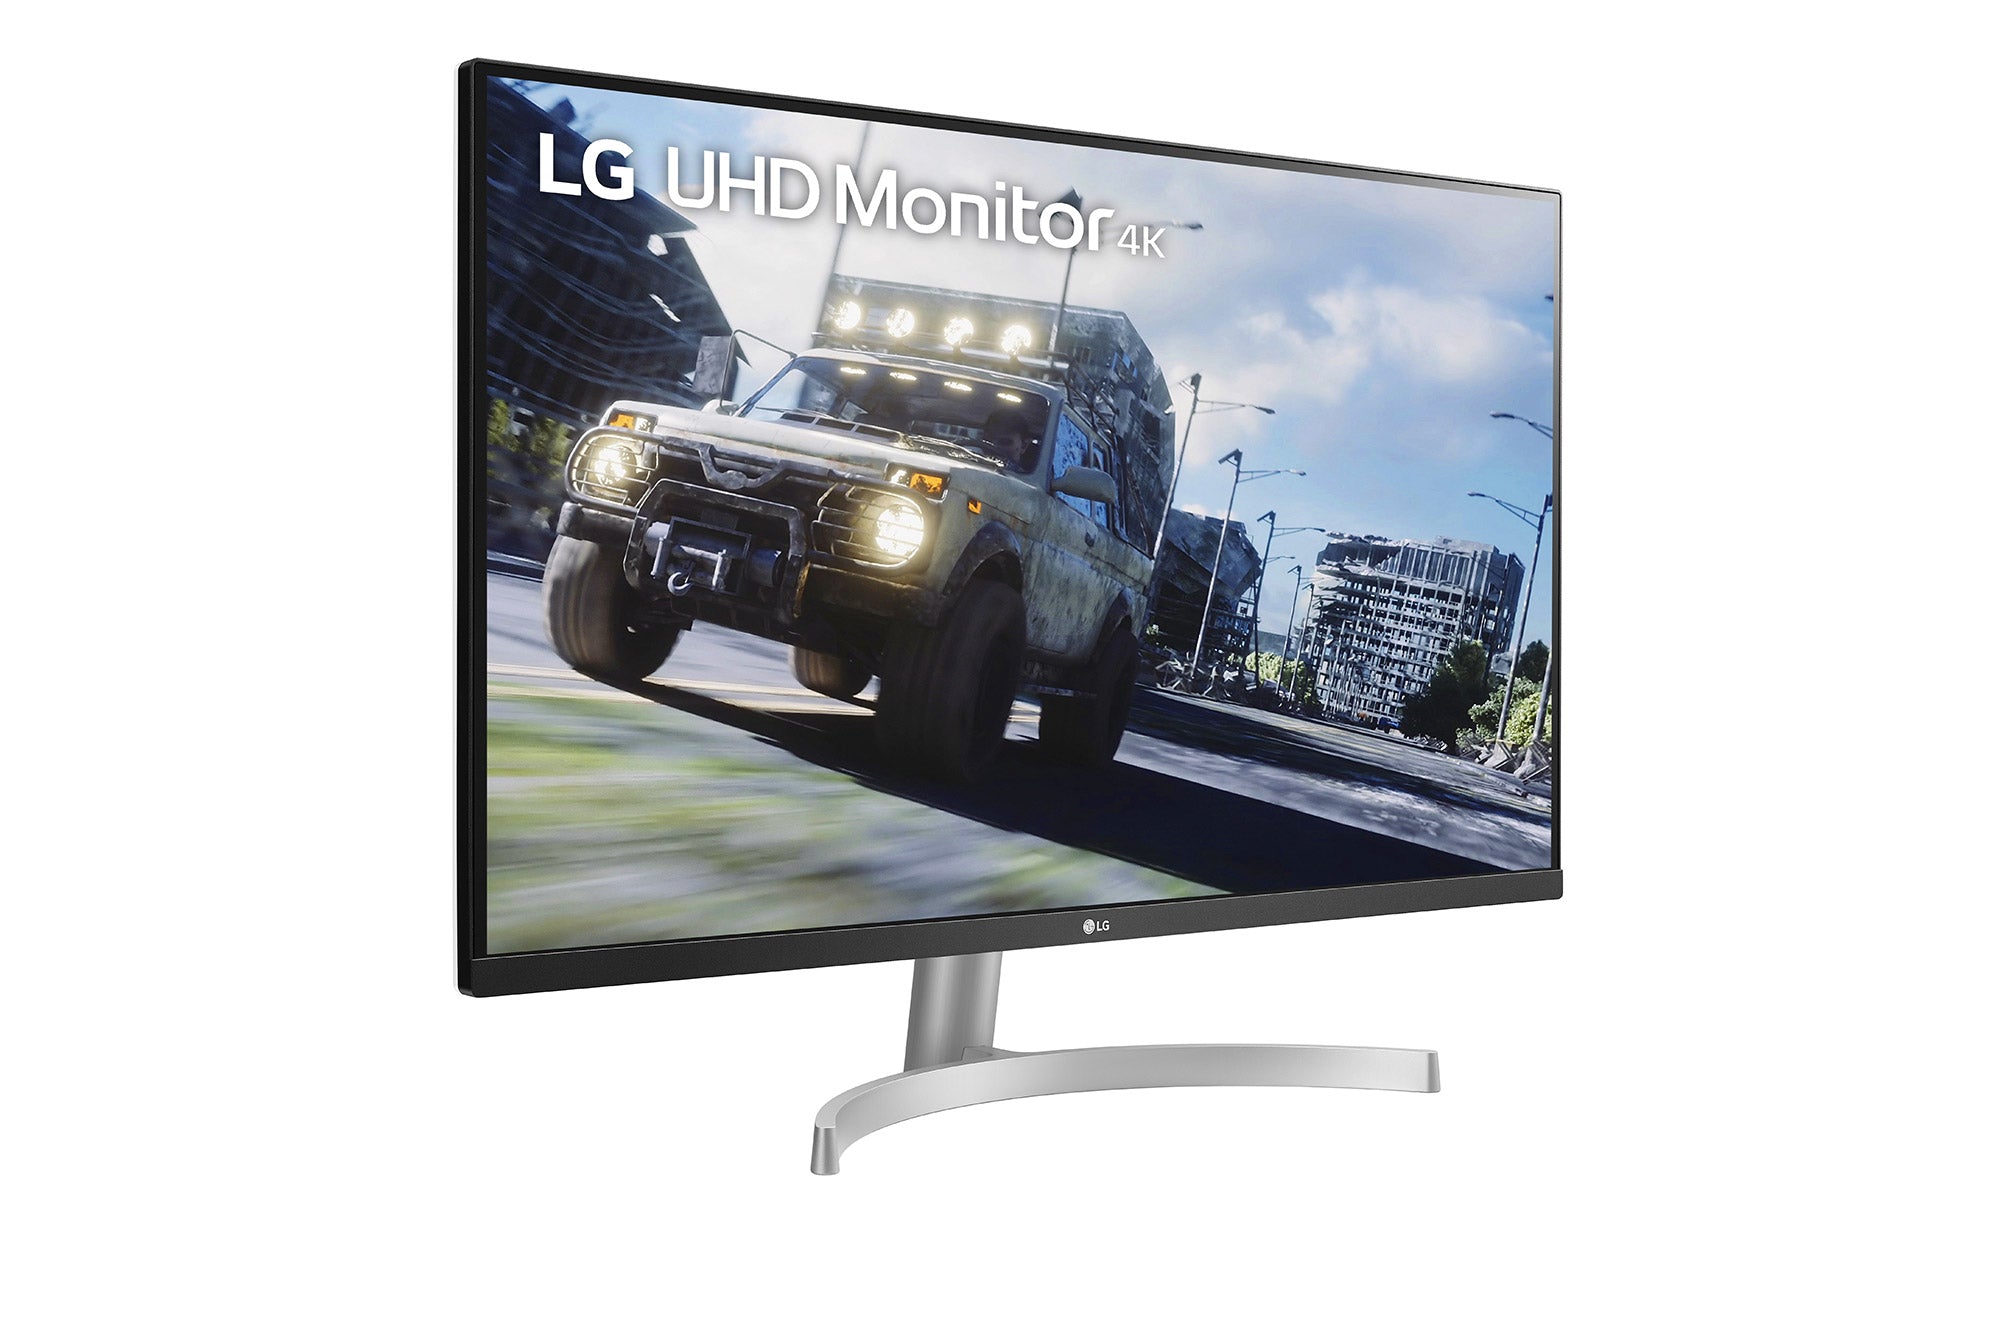 LG 32UN500 UltraHD Monitor / 32 inch / 3840 x 2160 Resolution /AMD FreeSync / Dynamic Action Sync / Black Stabilizer